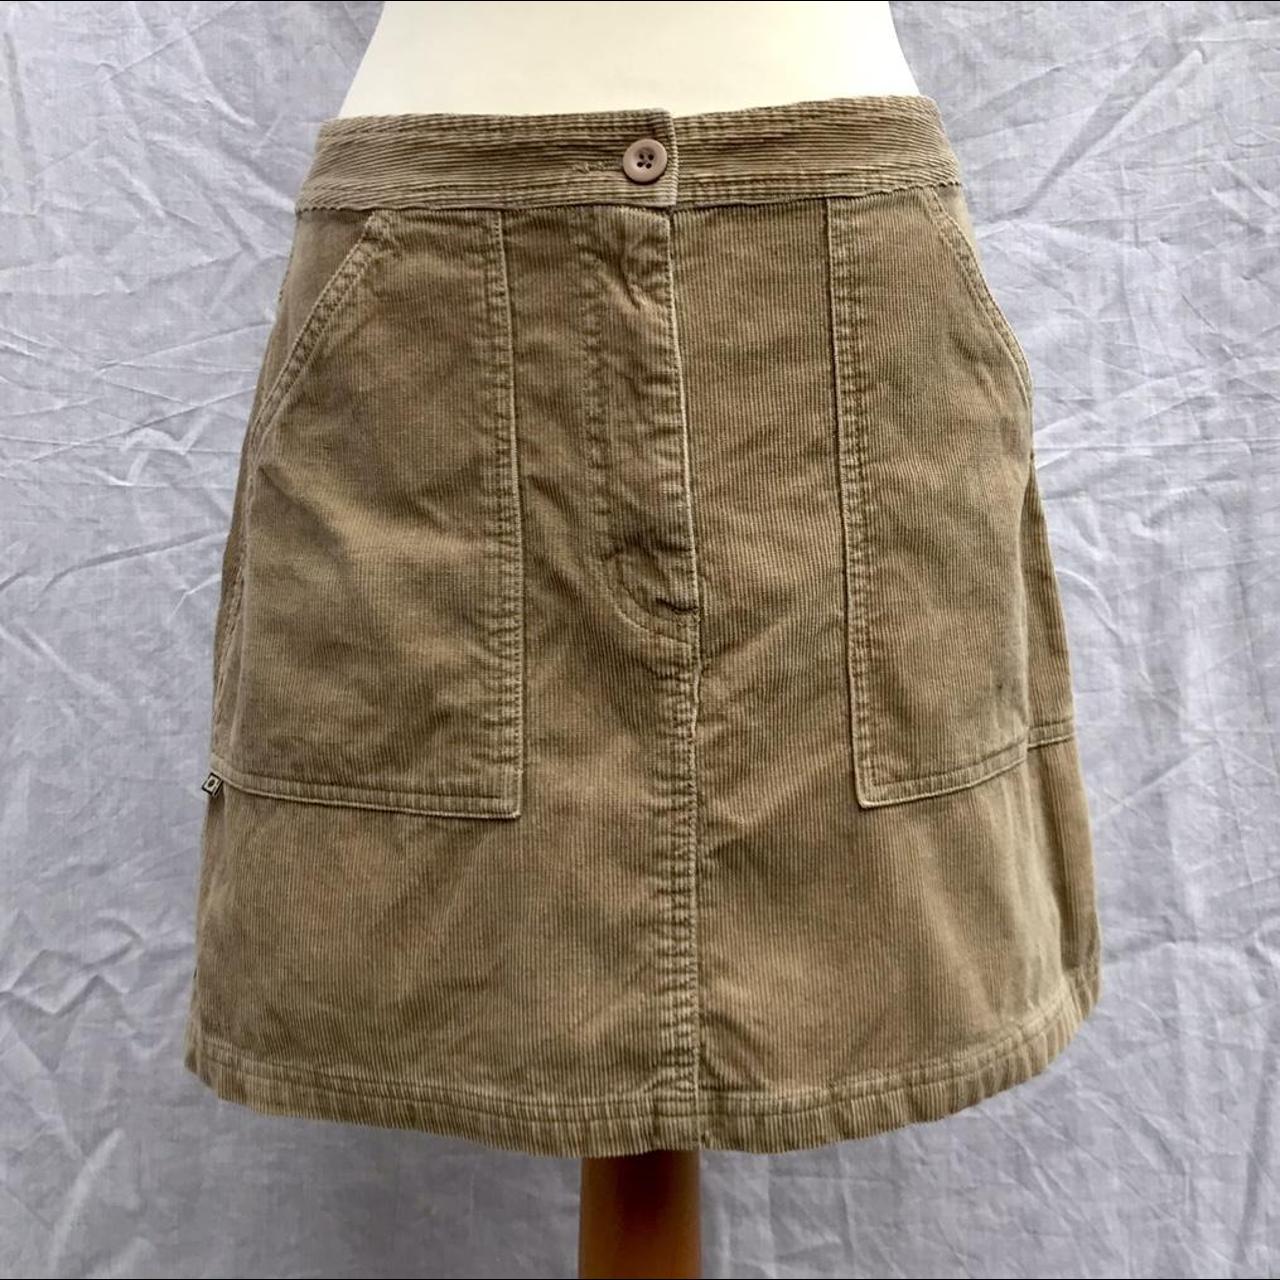 River Island Women's Tan Skirt | Depop